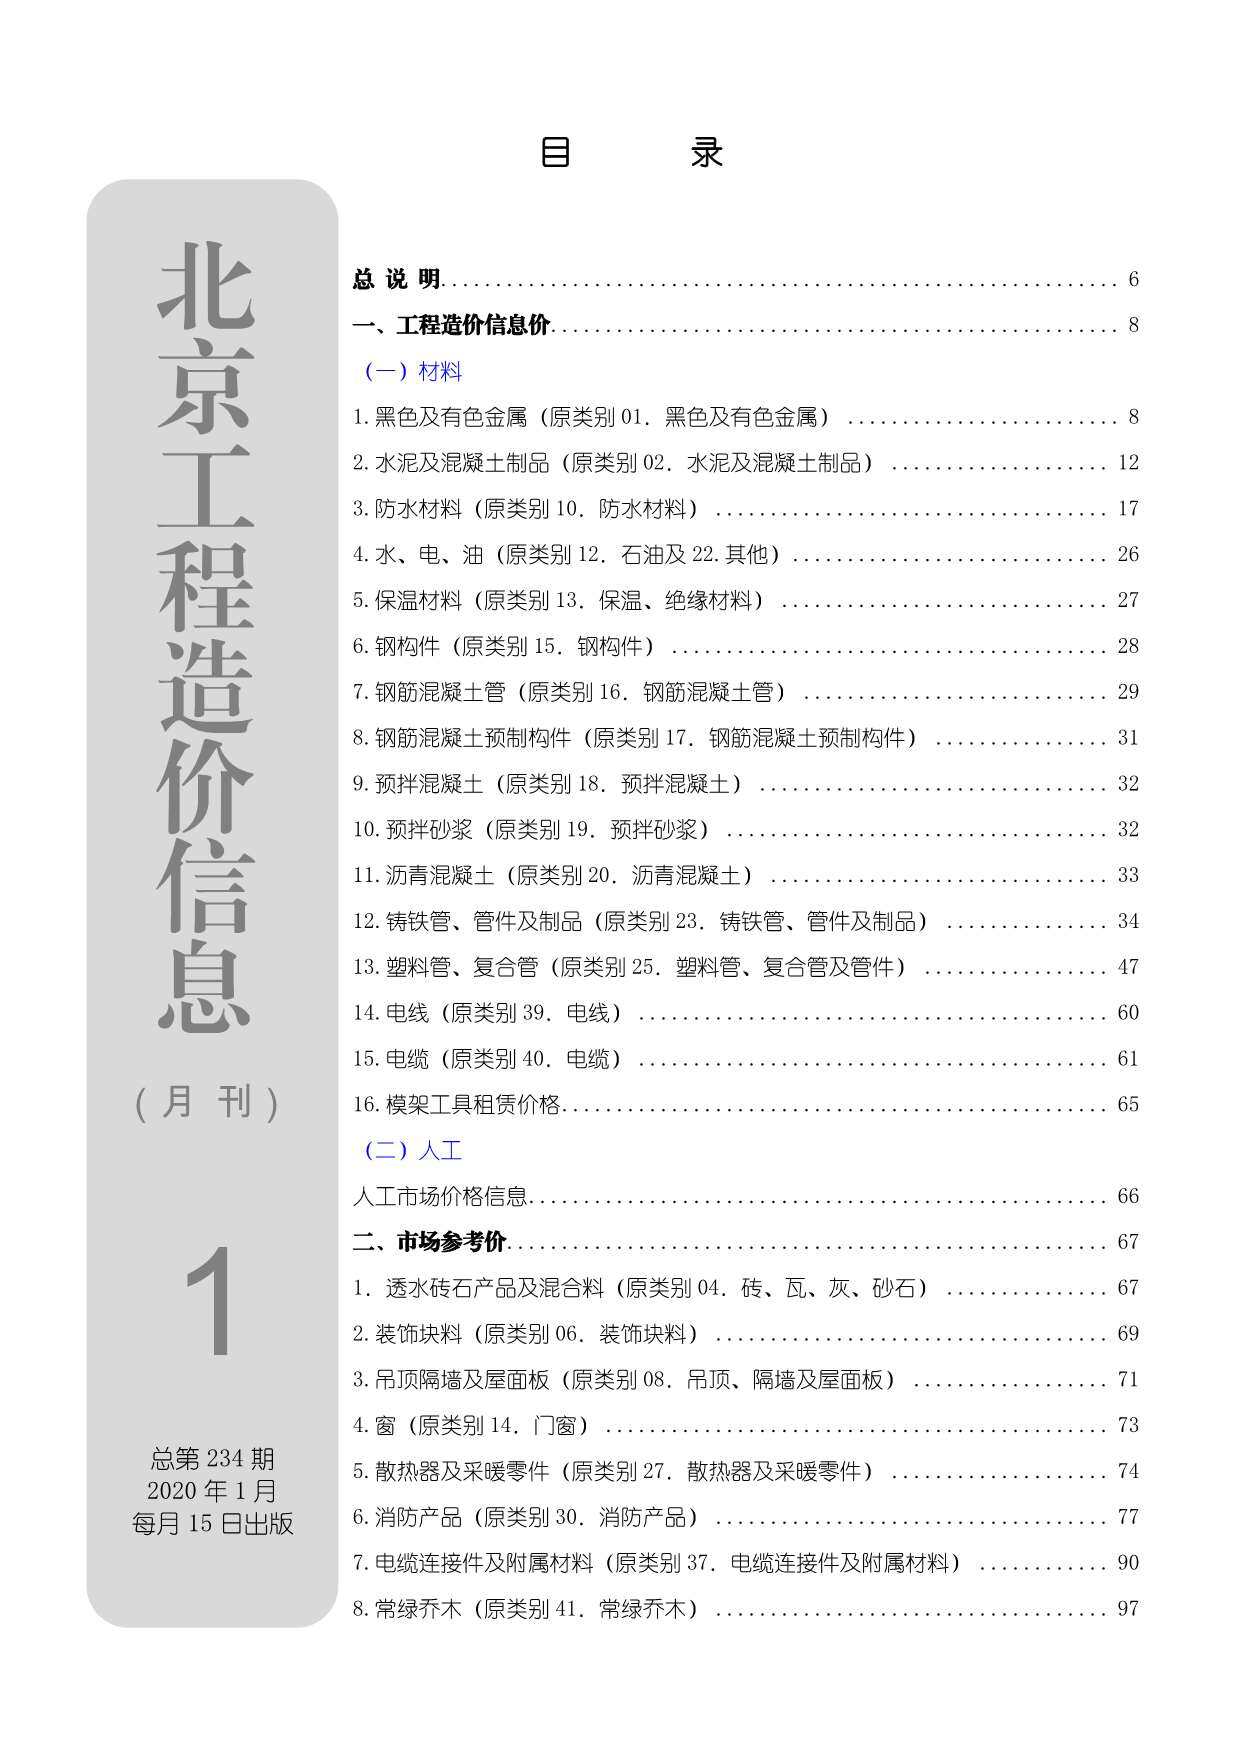 北京市2020年1月工程造价信息期刊